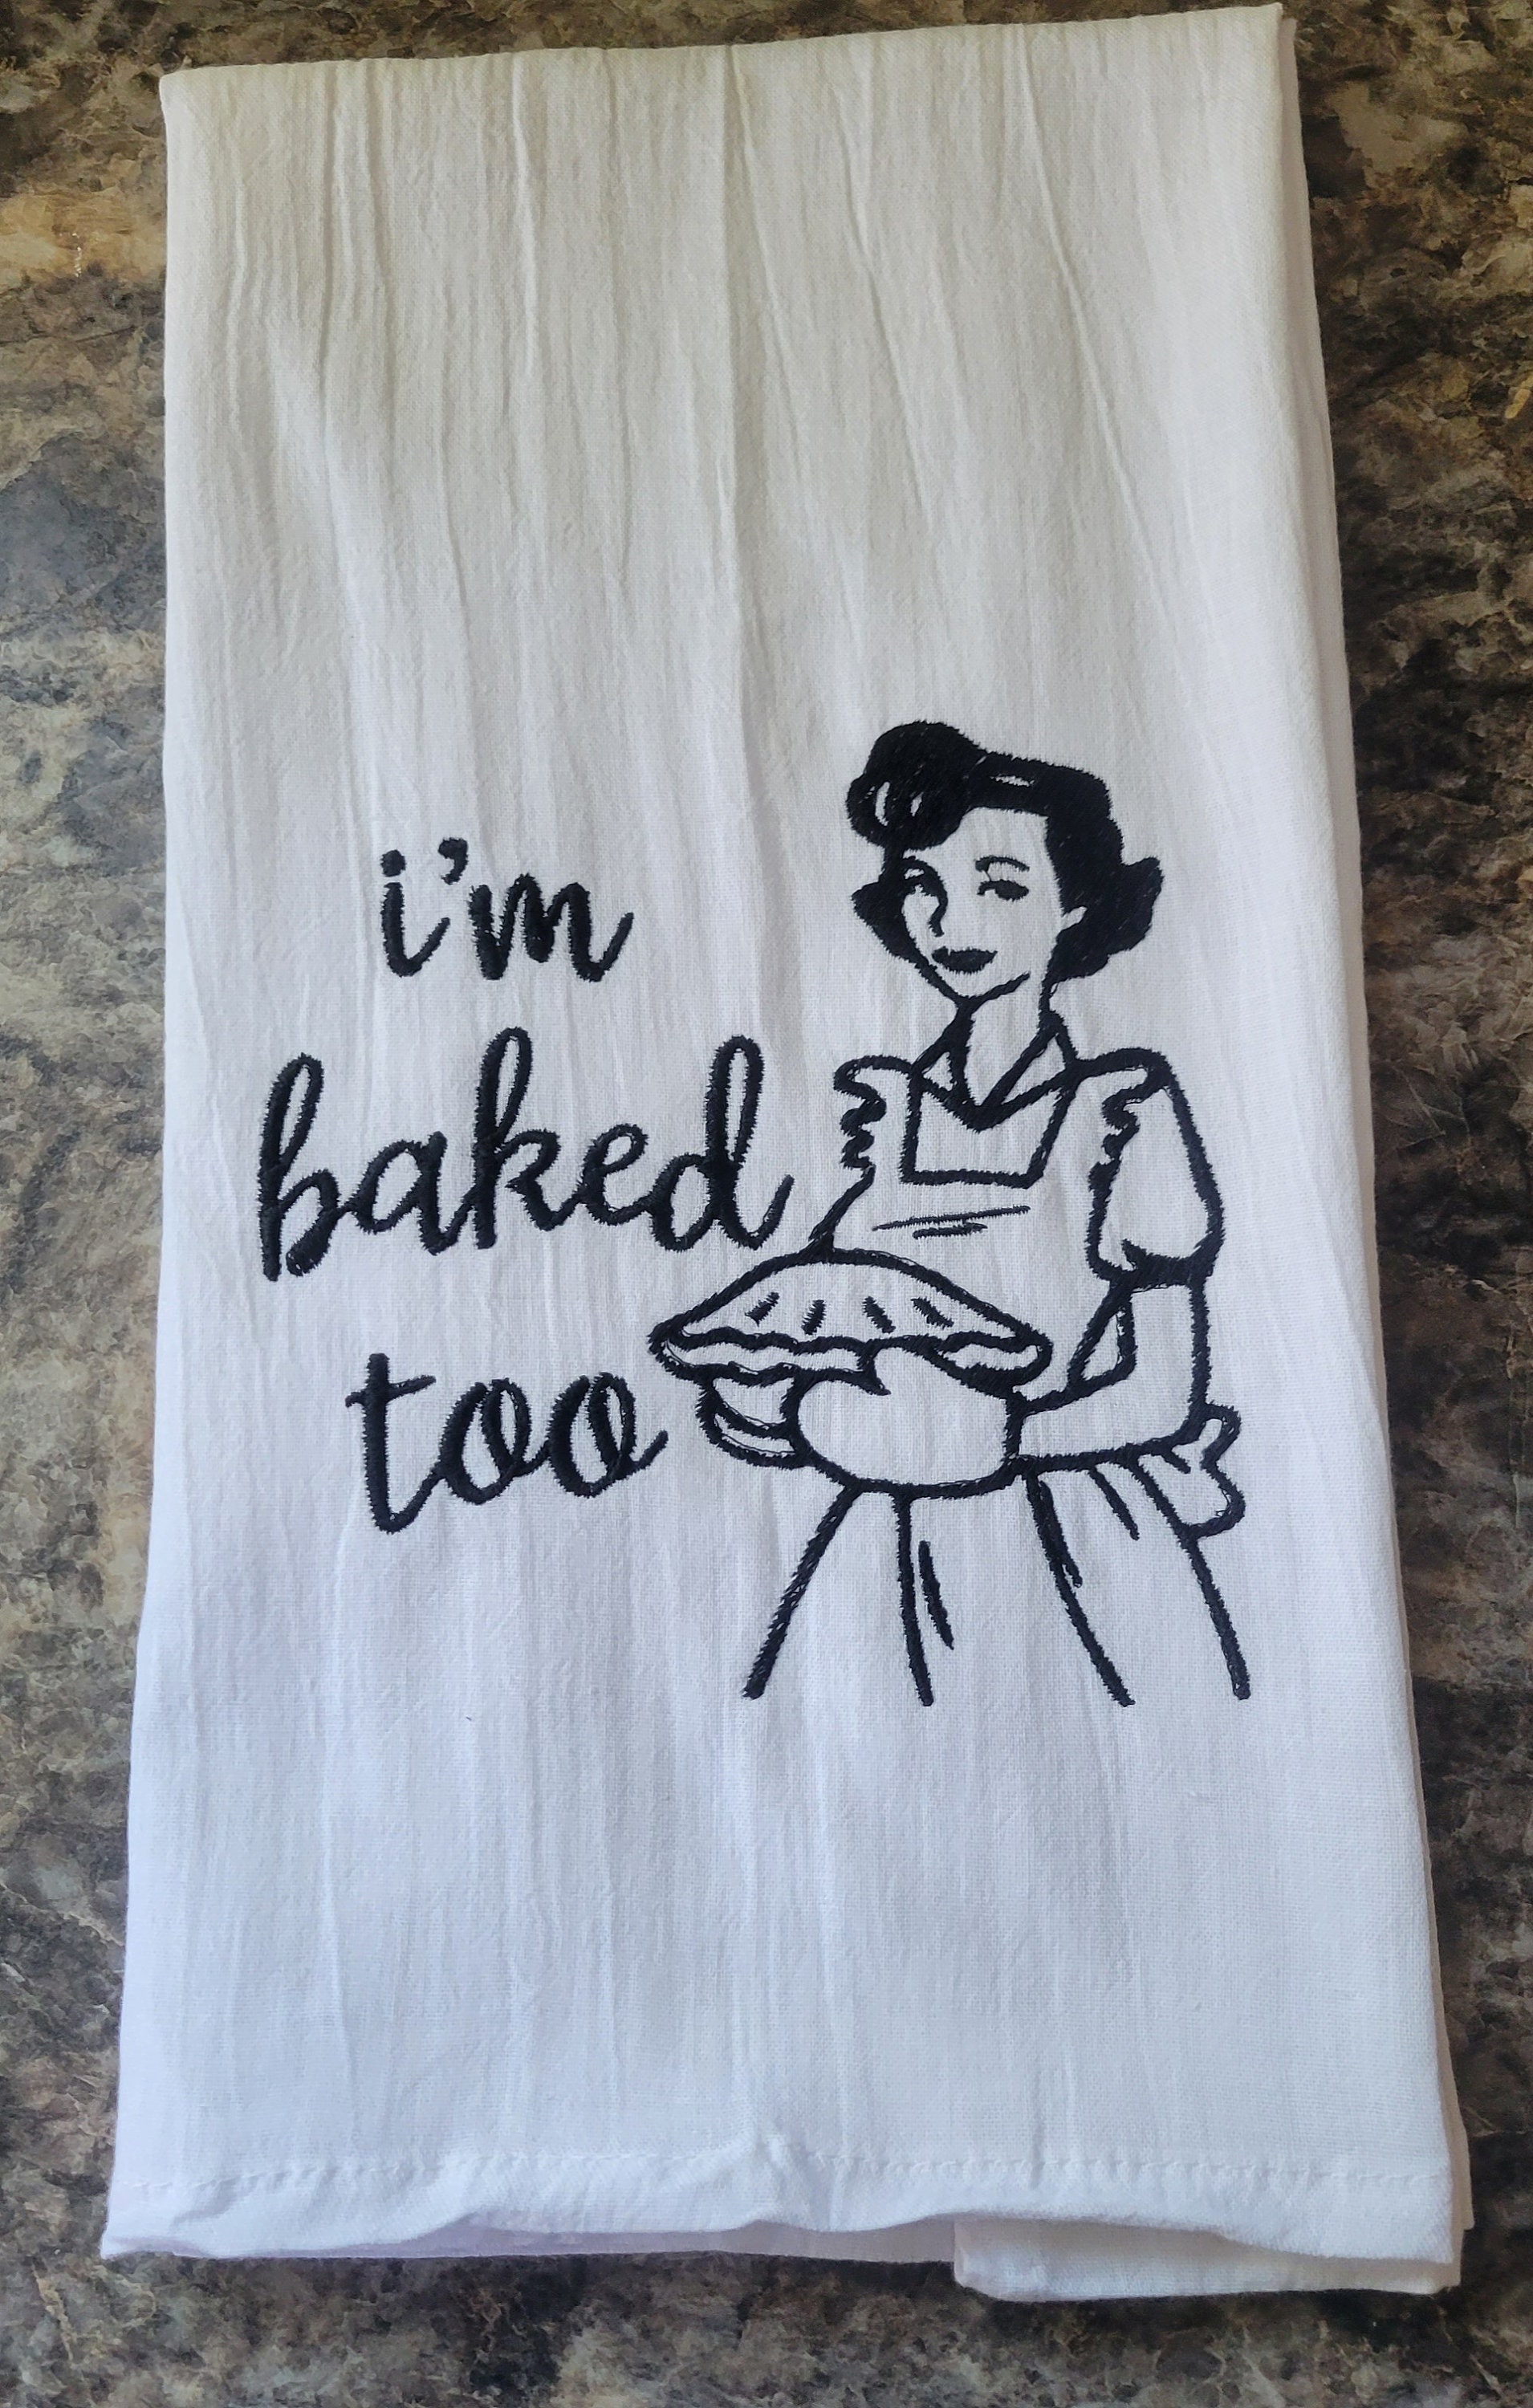 I'm Baked Too - Tea Towel